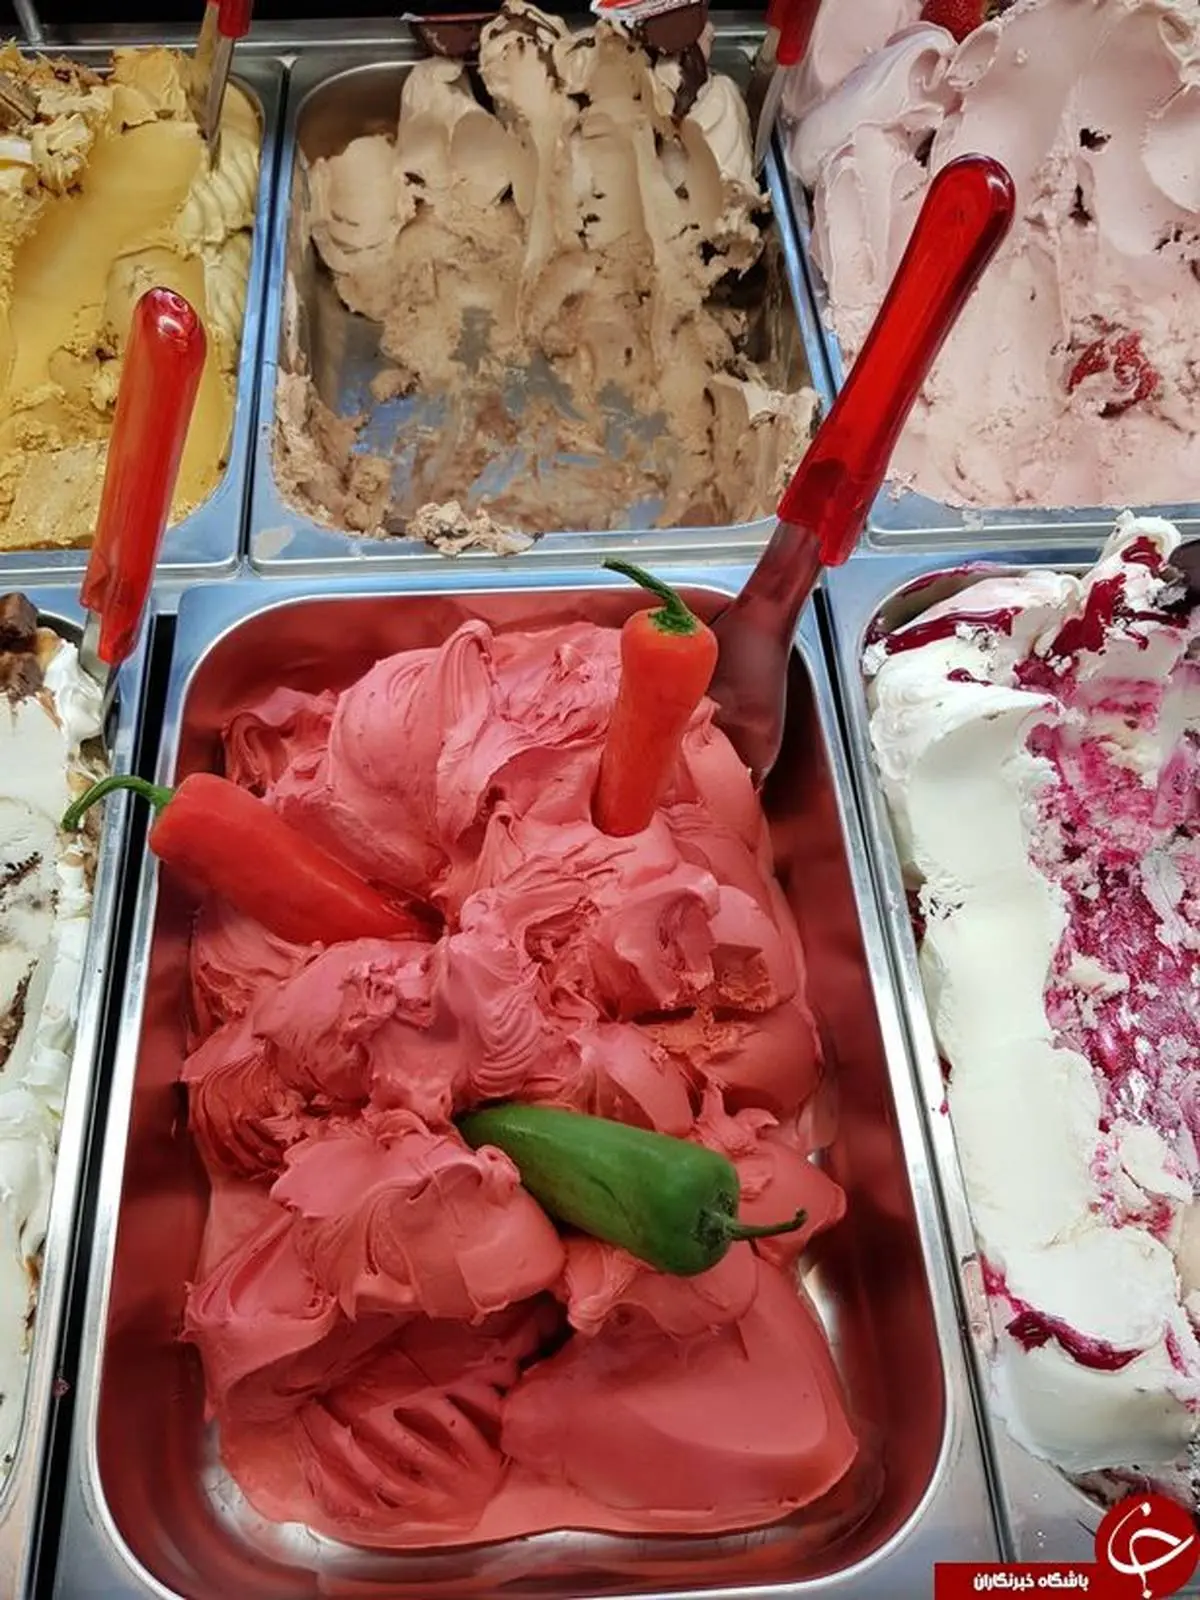 برای خوردن ابن بستنی باید تعهد کتبی بدهید! +تصاویر